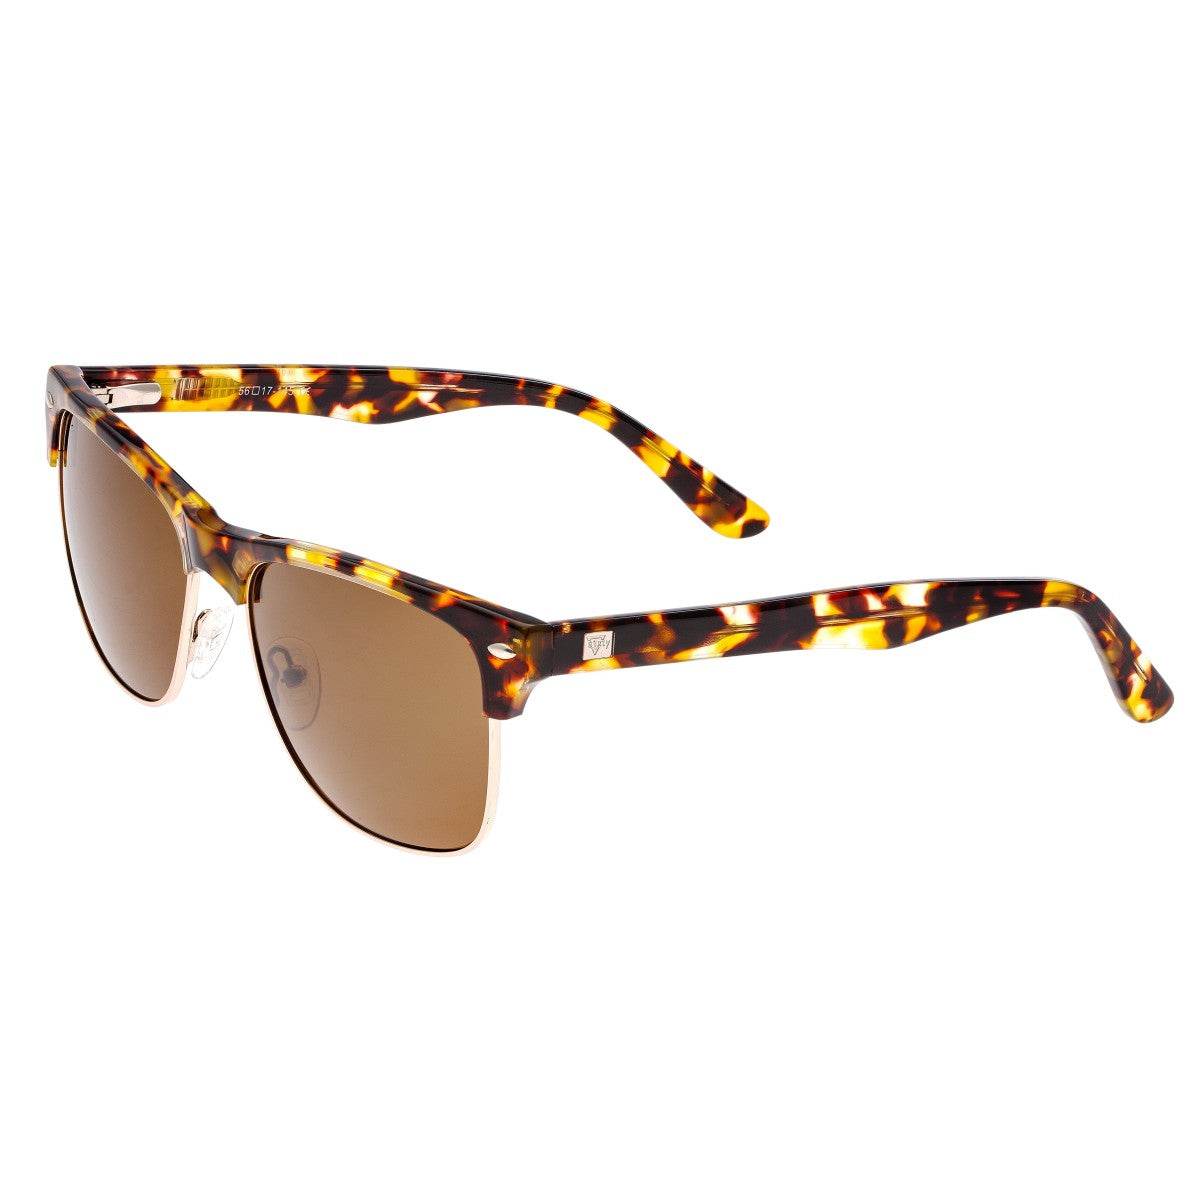 Sixty One Waipio Polarized Sunglasses - Brown Tortoise/Brown - SIXS136BN